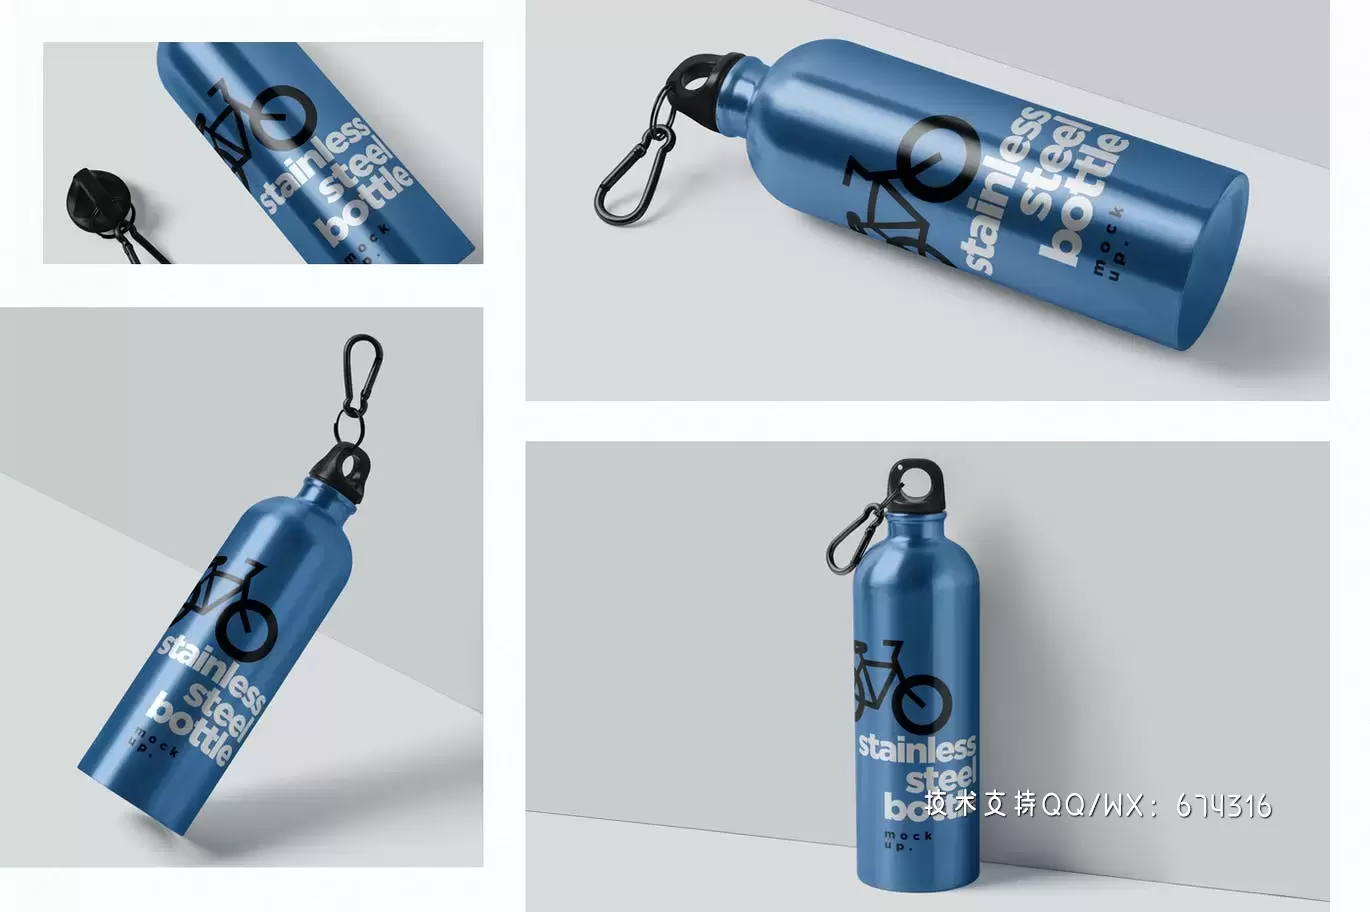 时尚高端高品质的热水瓶包装设计VI样机展示模型mockups免费下载插图1